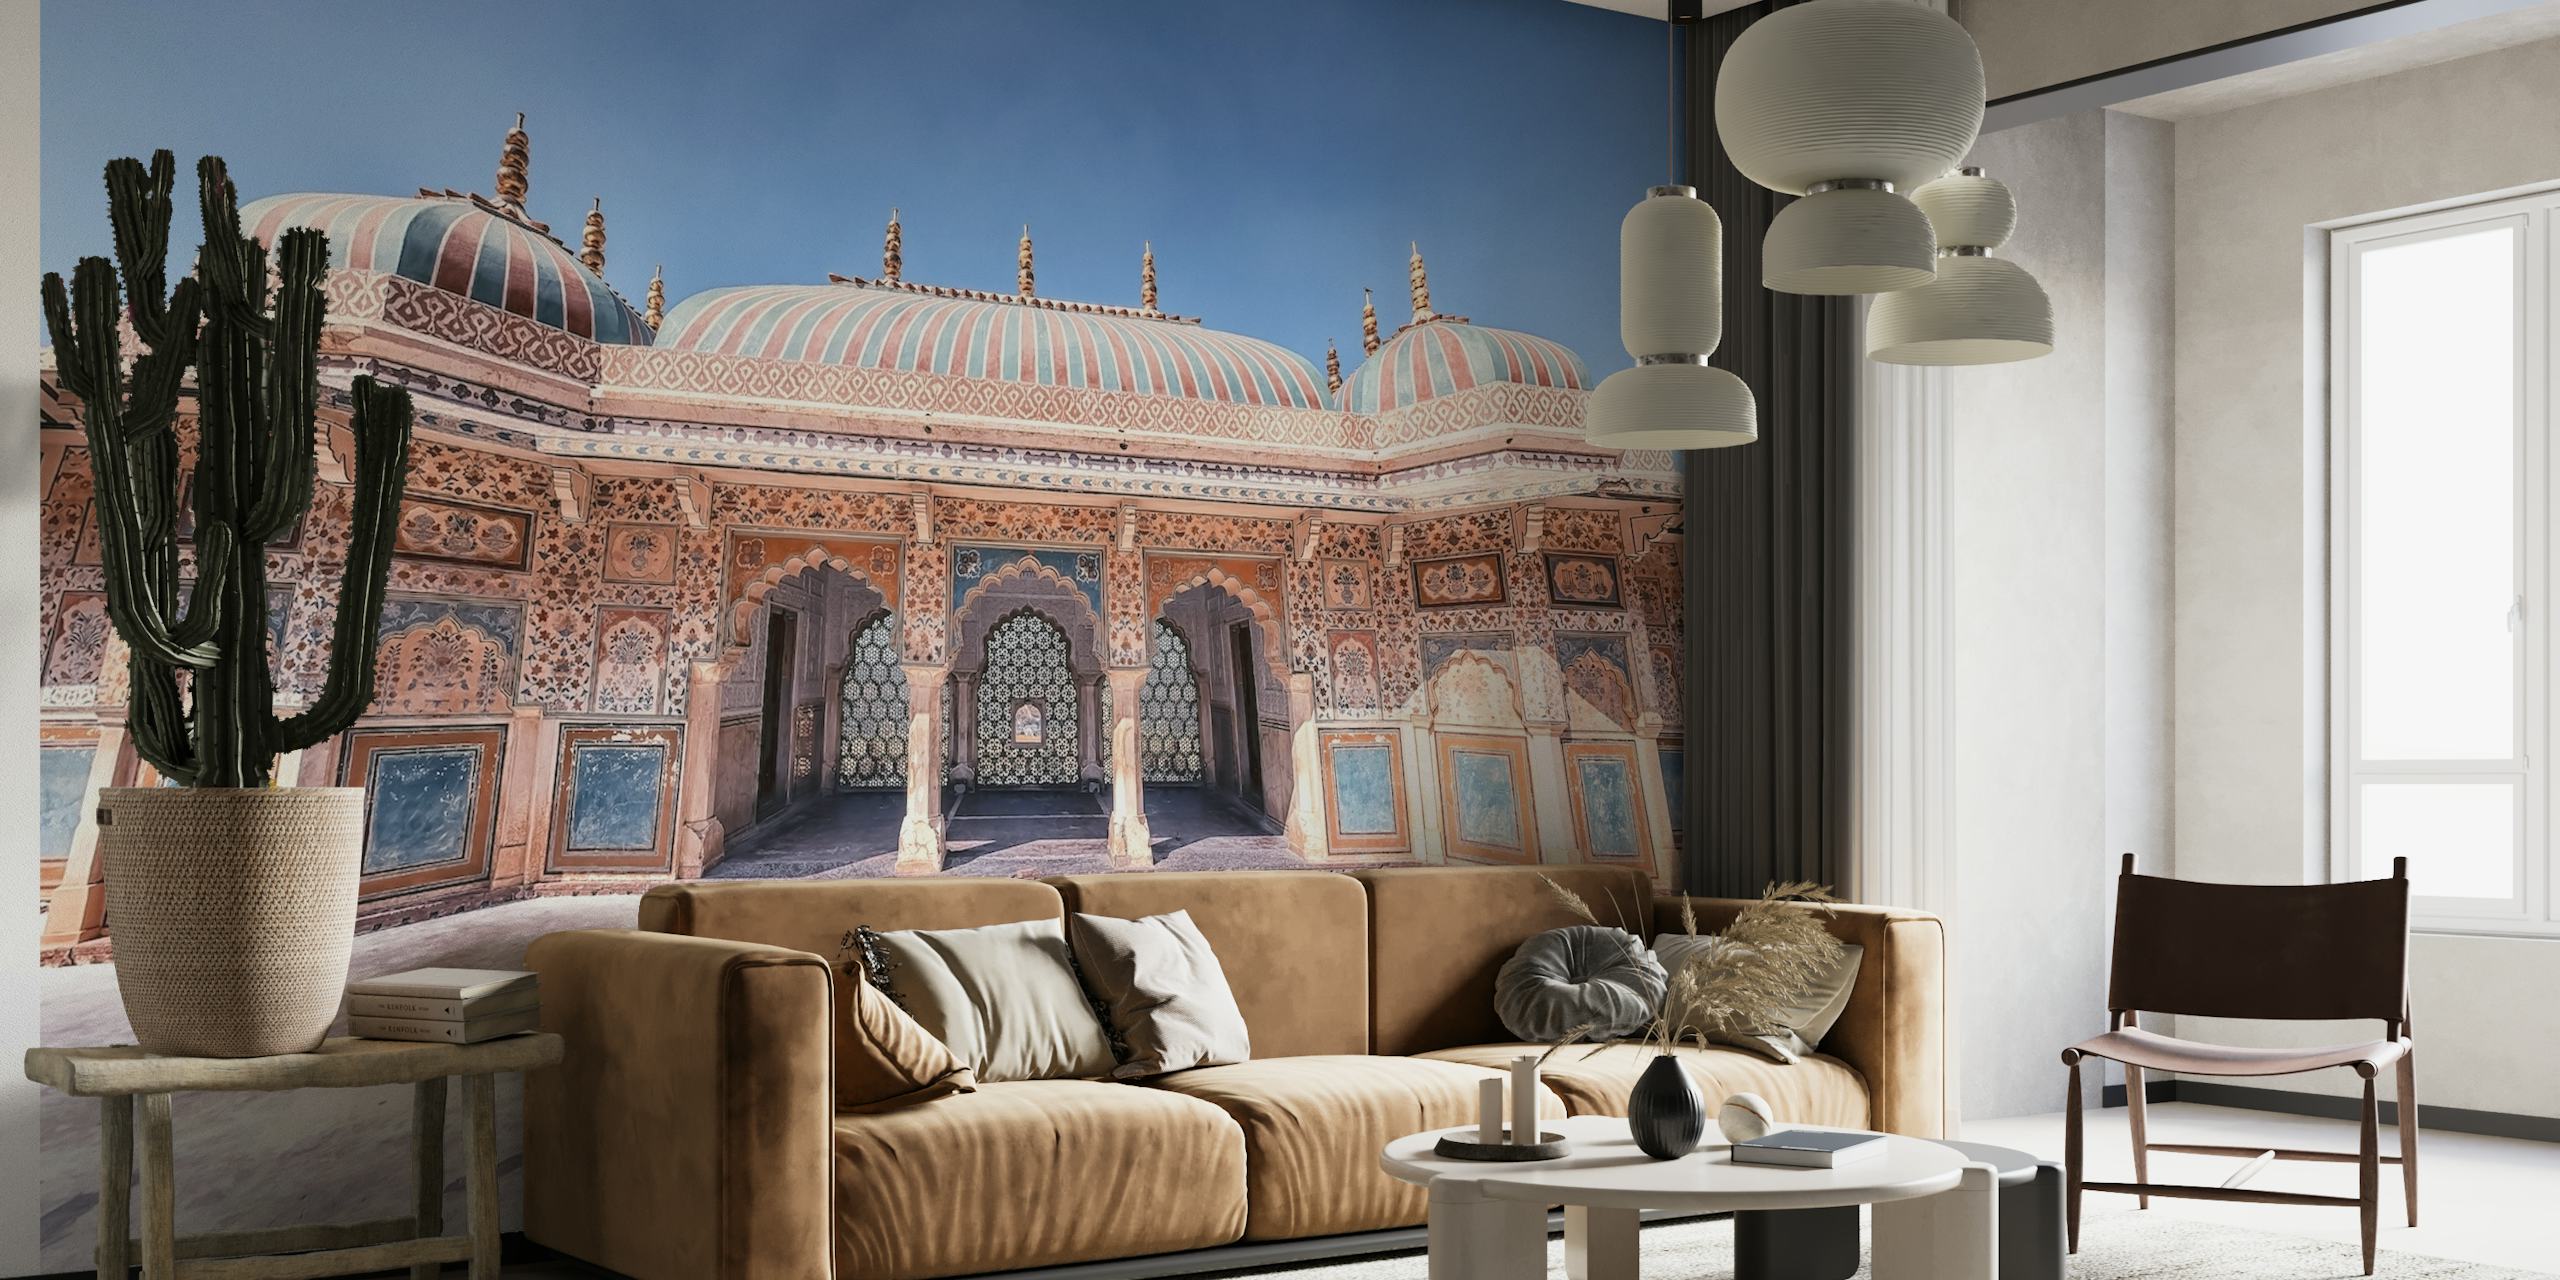 Papier peint mural du Fort d'Amber représentant la majestueuse architecture indienne et les détails complexes du palais